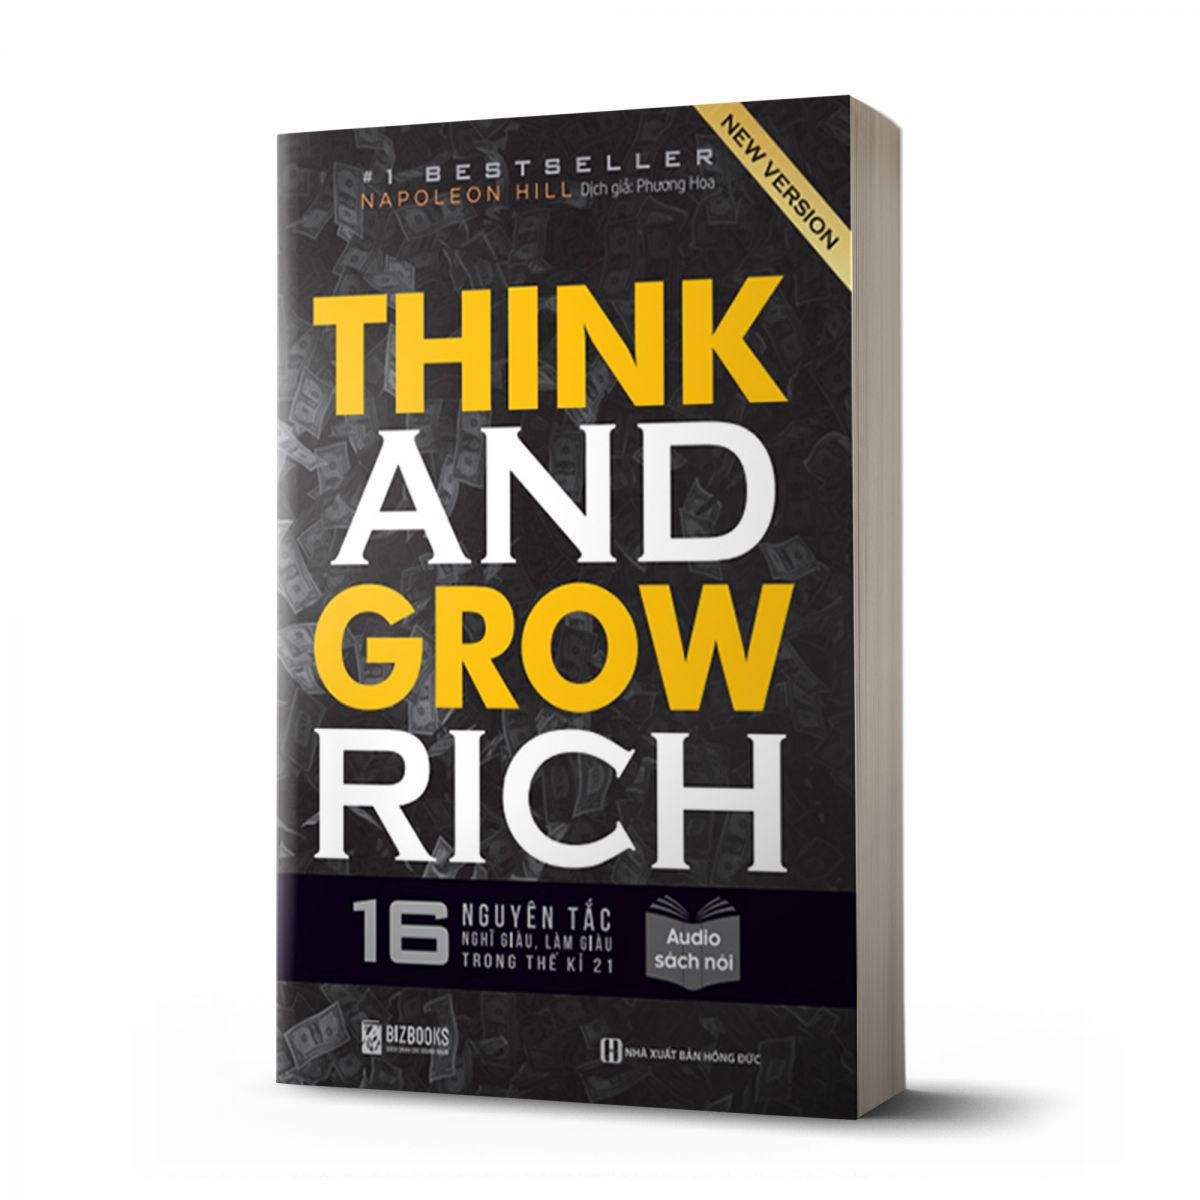 Think and Grow Rich: 16 Nguyên tắc nghĩ giàu làm giàu trong thế kỉ 21 1